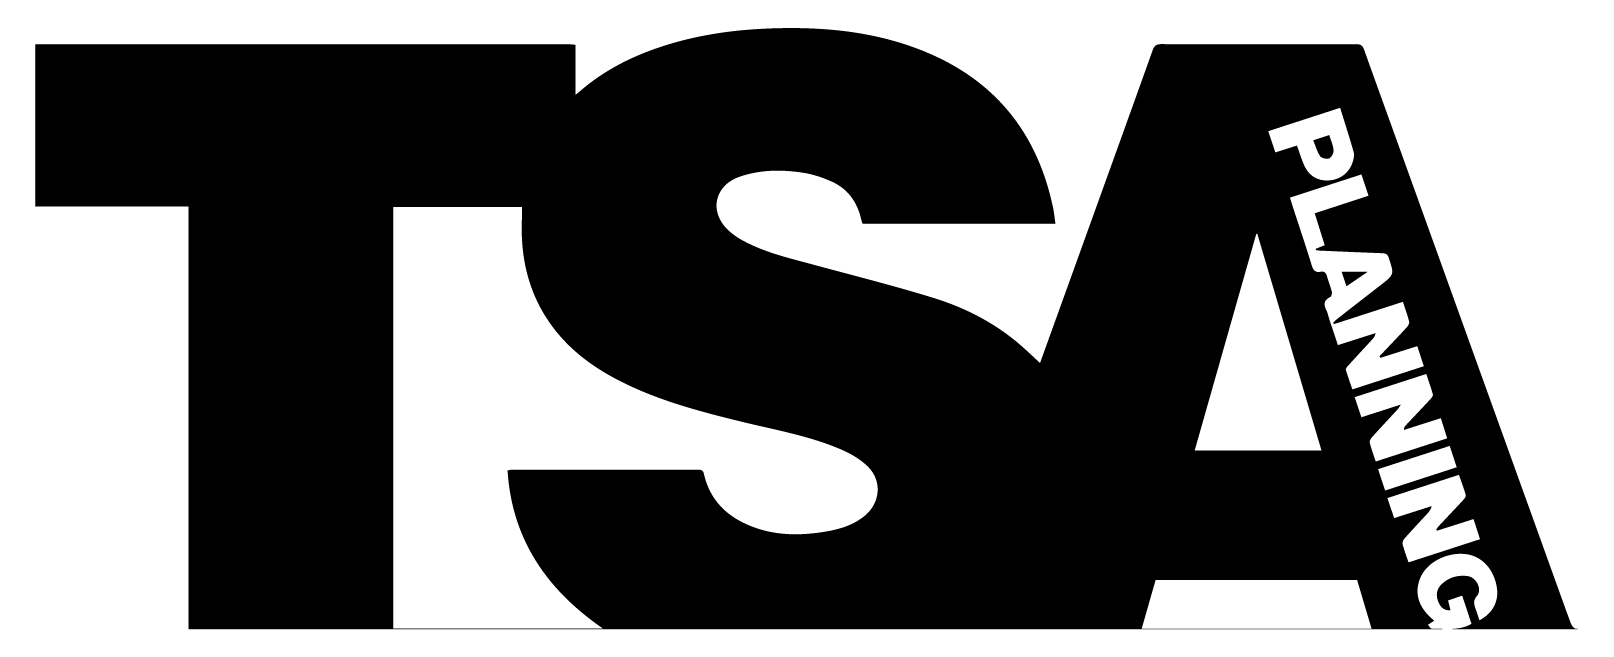 Black and White TSA Logo - About Us - TSA Planning